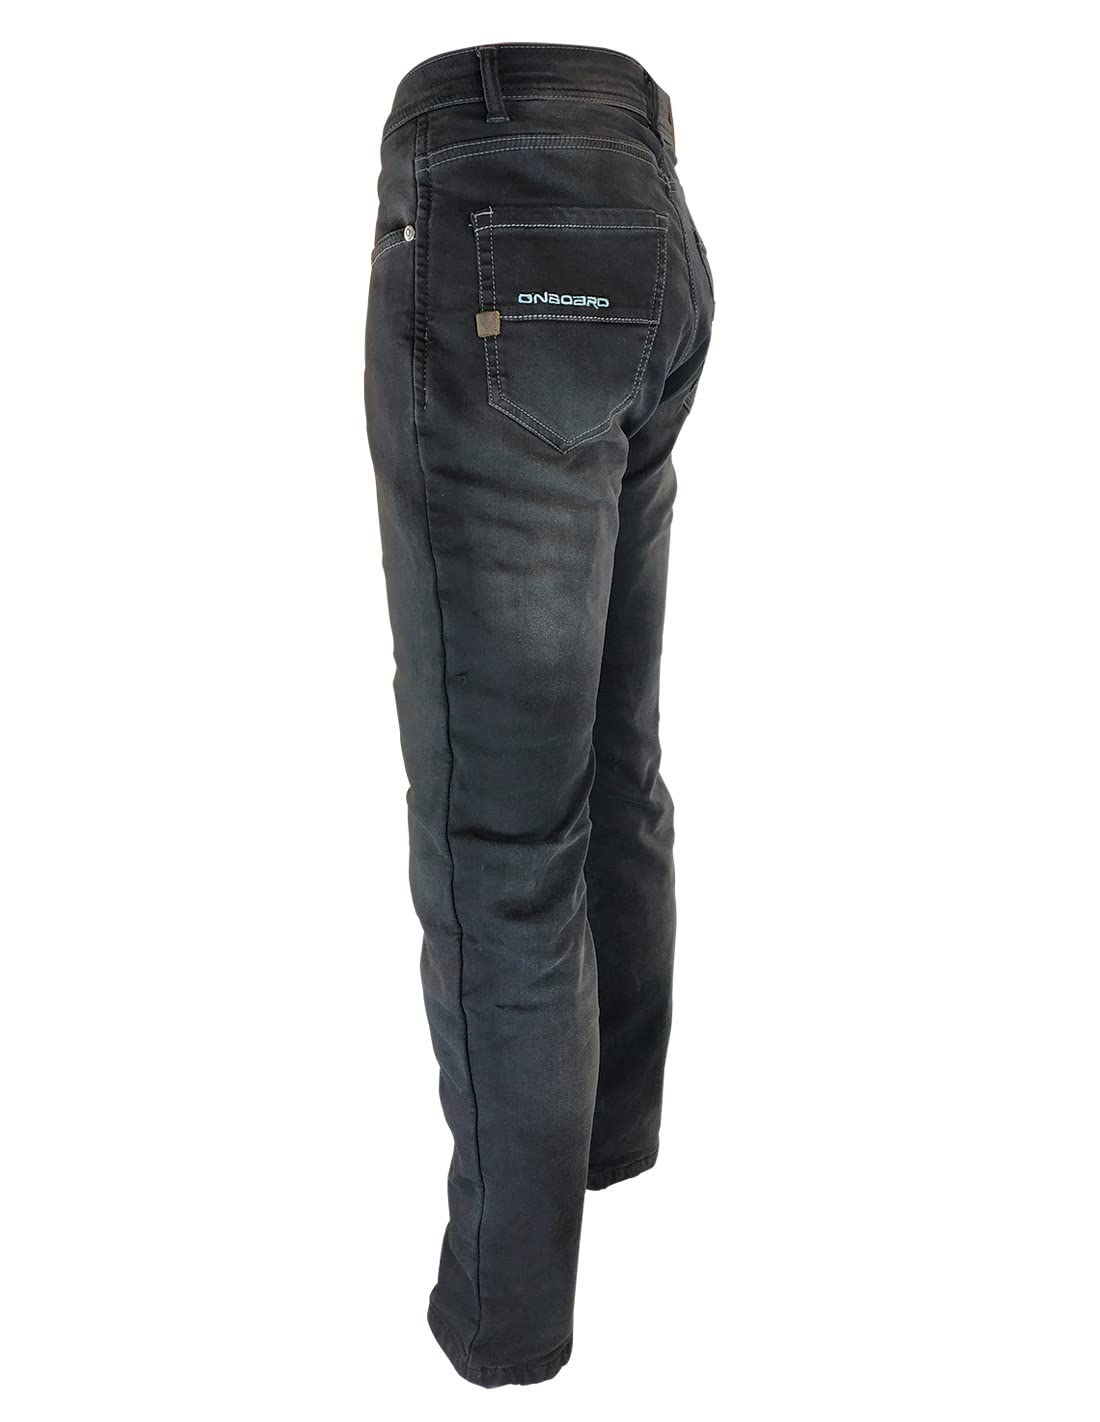 ON BOARD Concept Jeanshose mit Protektoren, Herren, 33, dunkelblau von ON BOARD